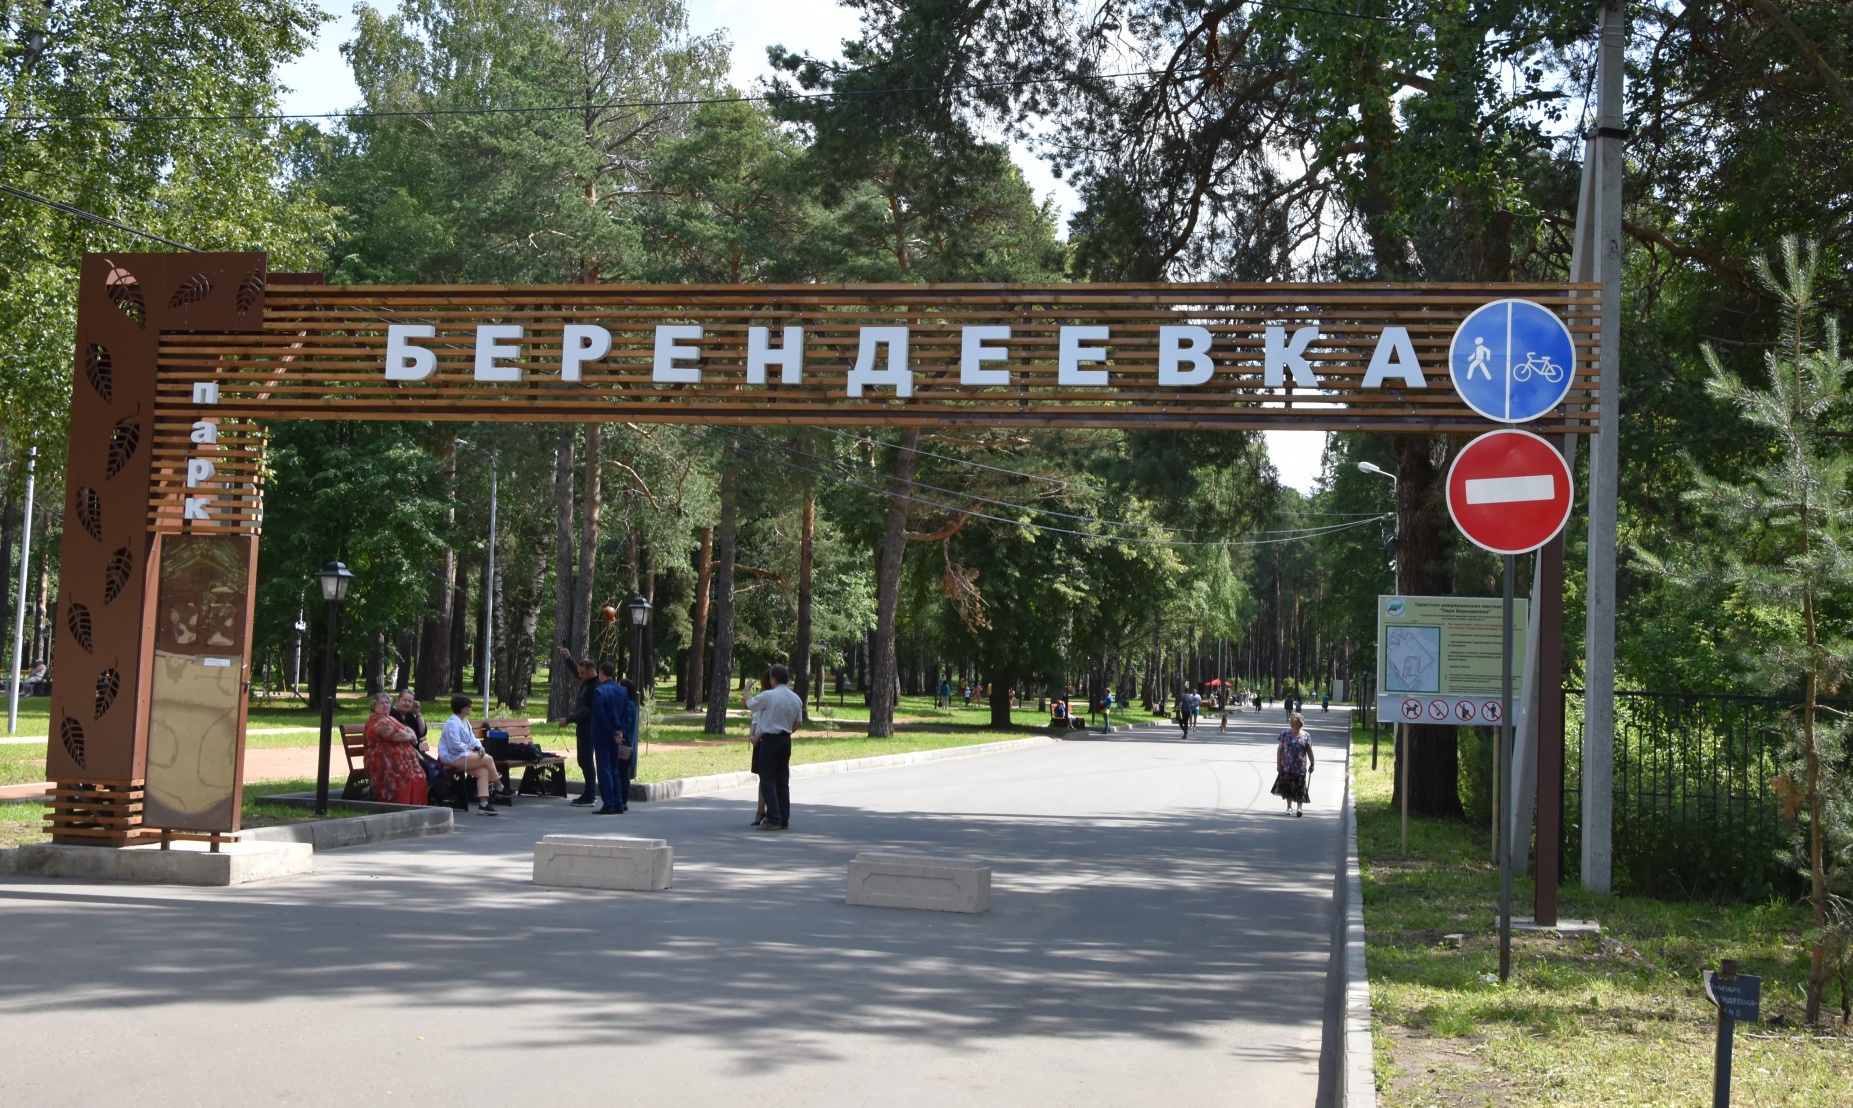 На время легкоатлетического забега для транспорта закроют въезд в парк «Берендеевка»